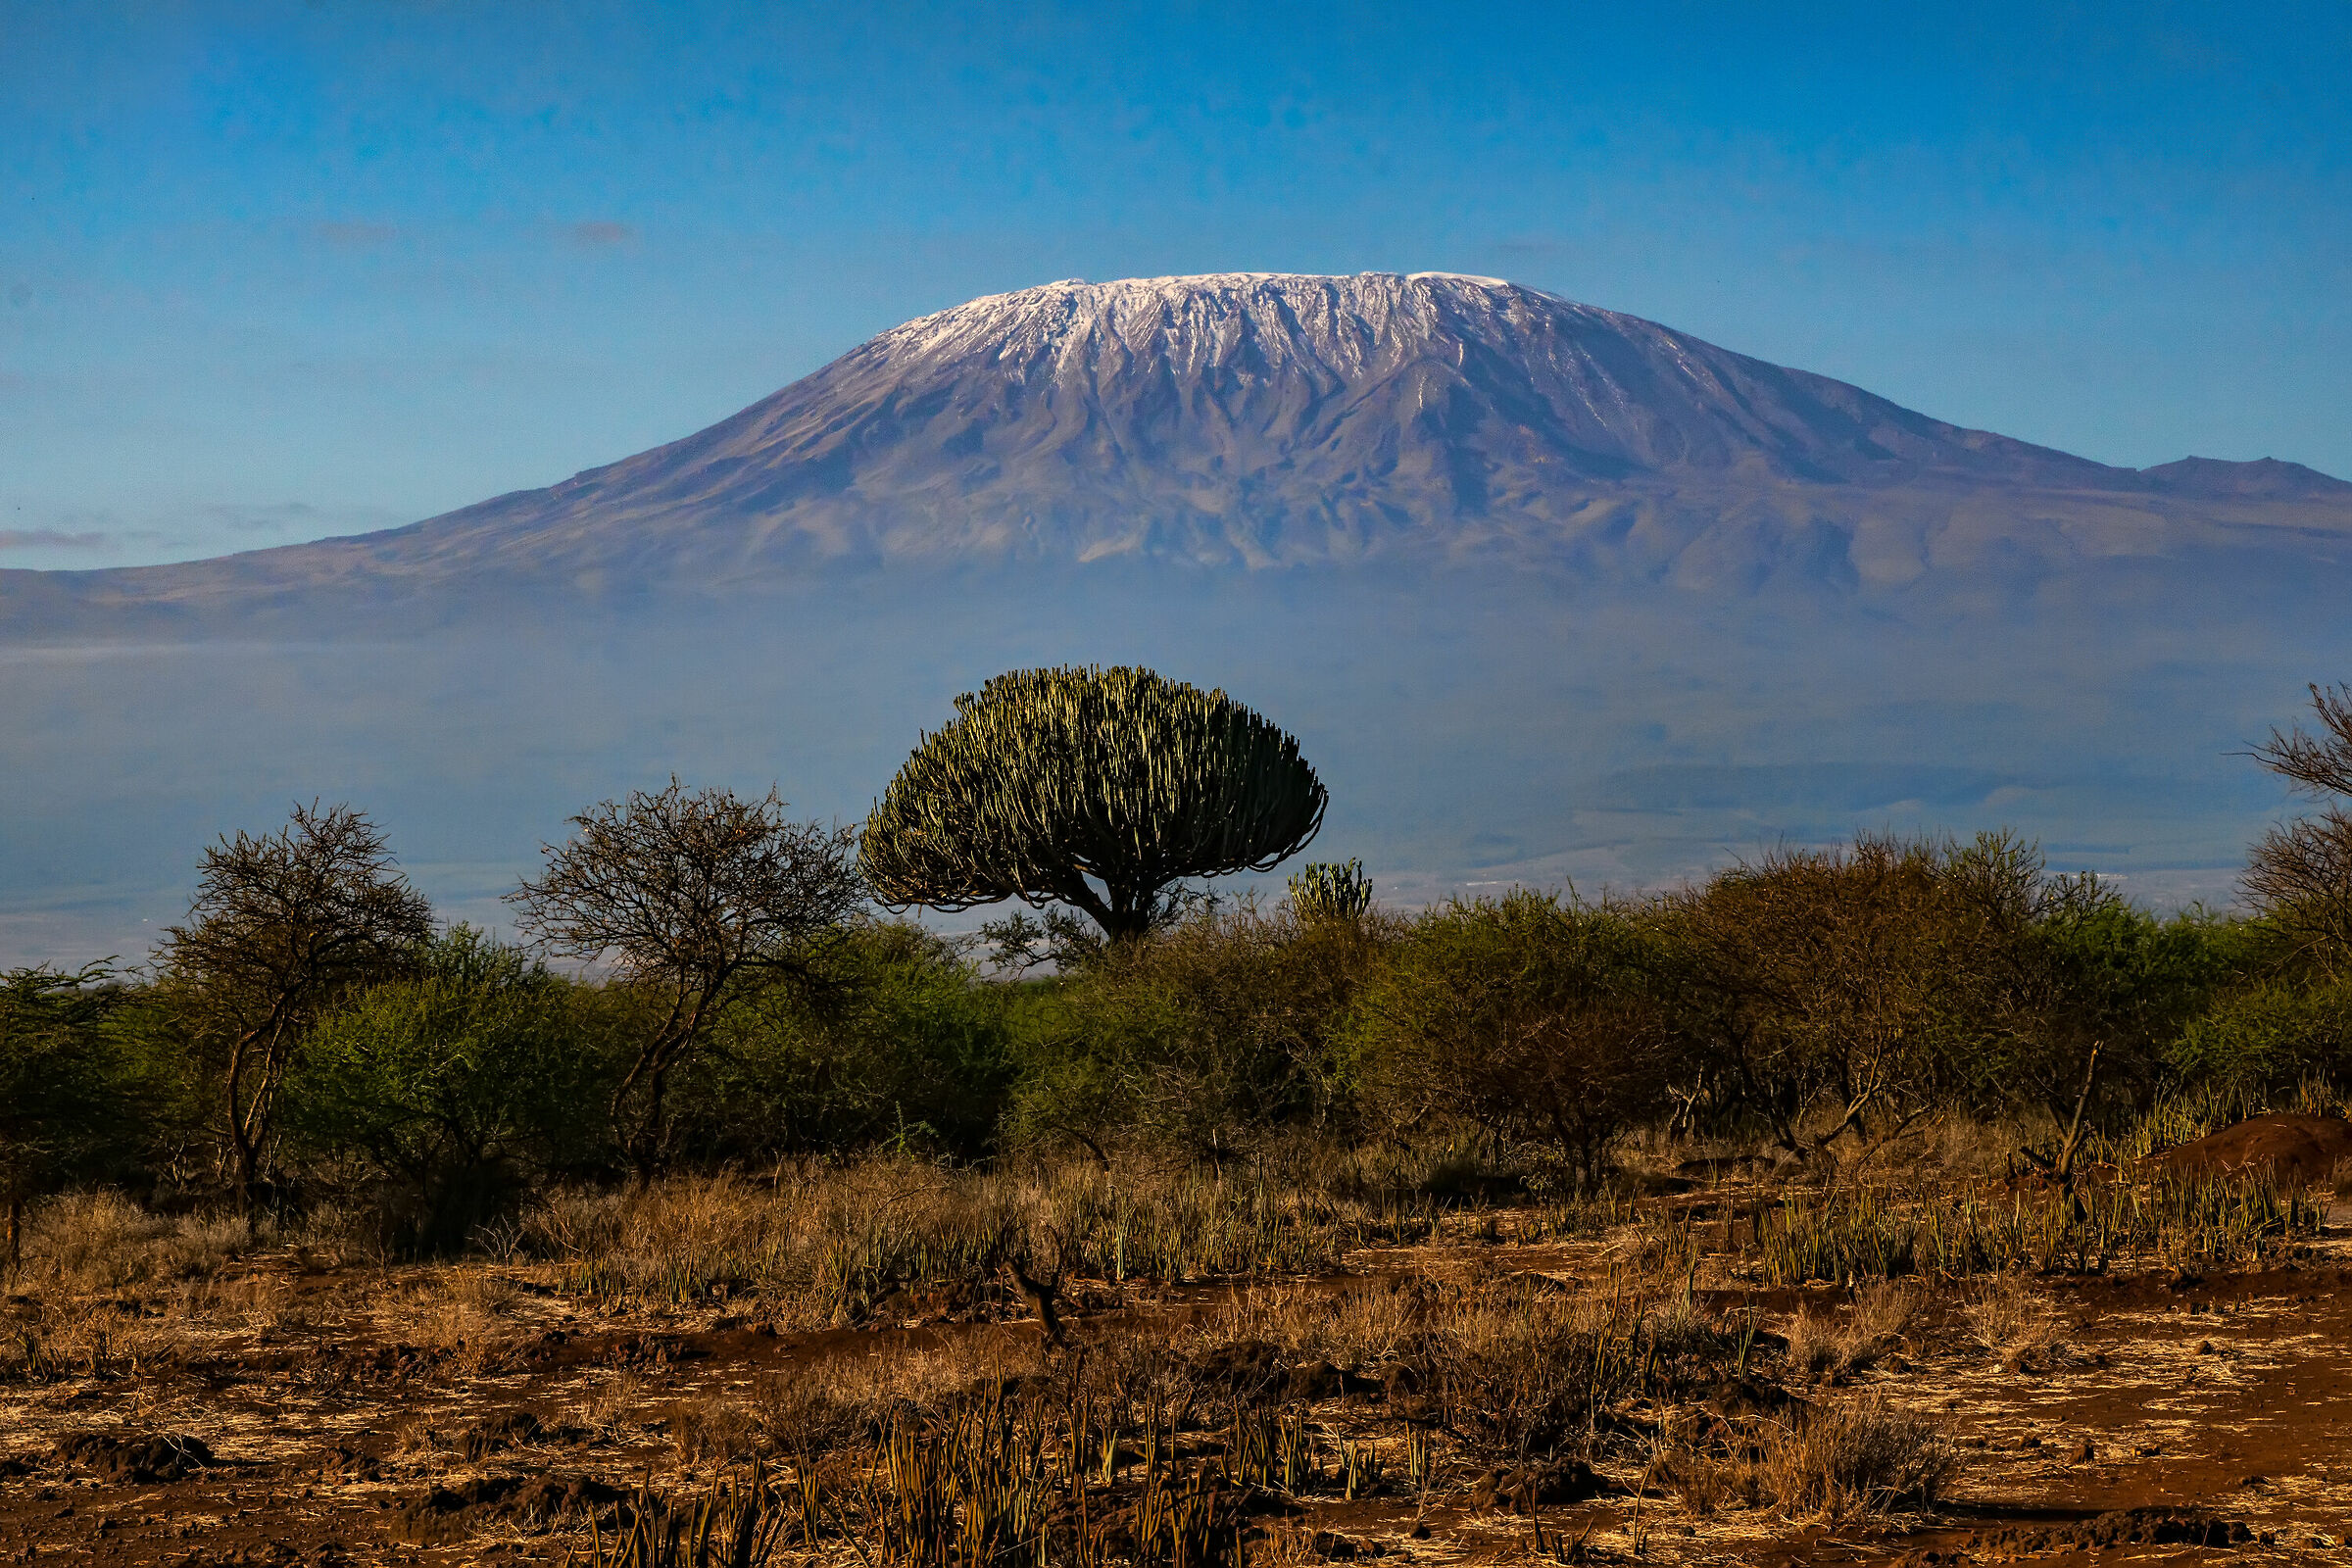 Kenya and Kilimanjaro...